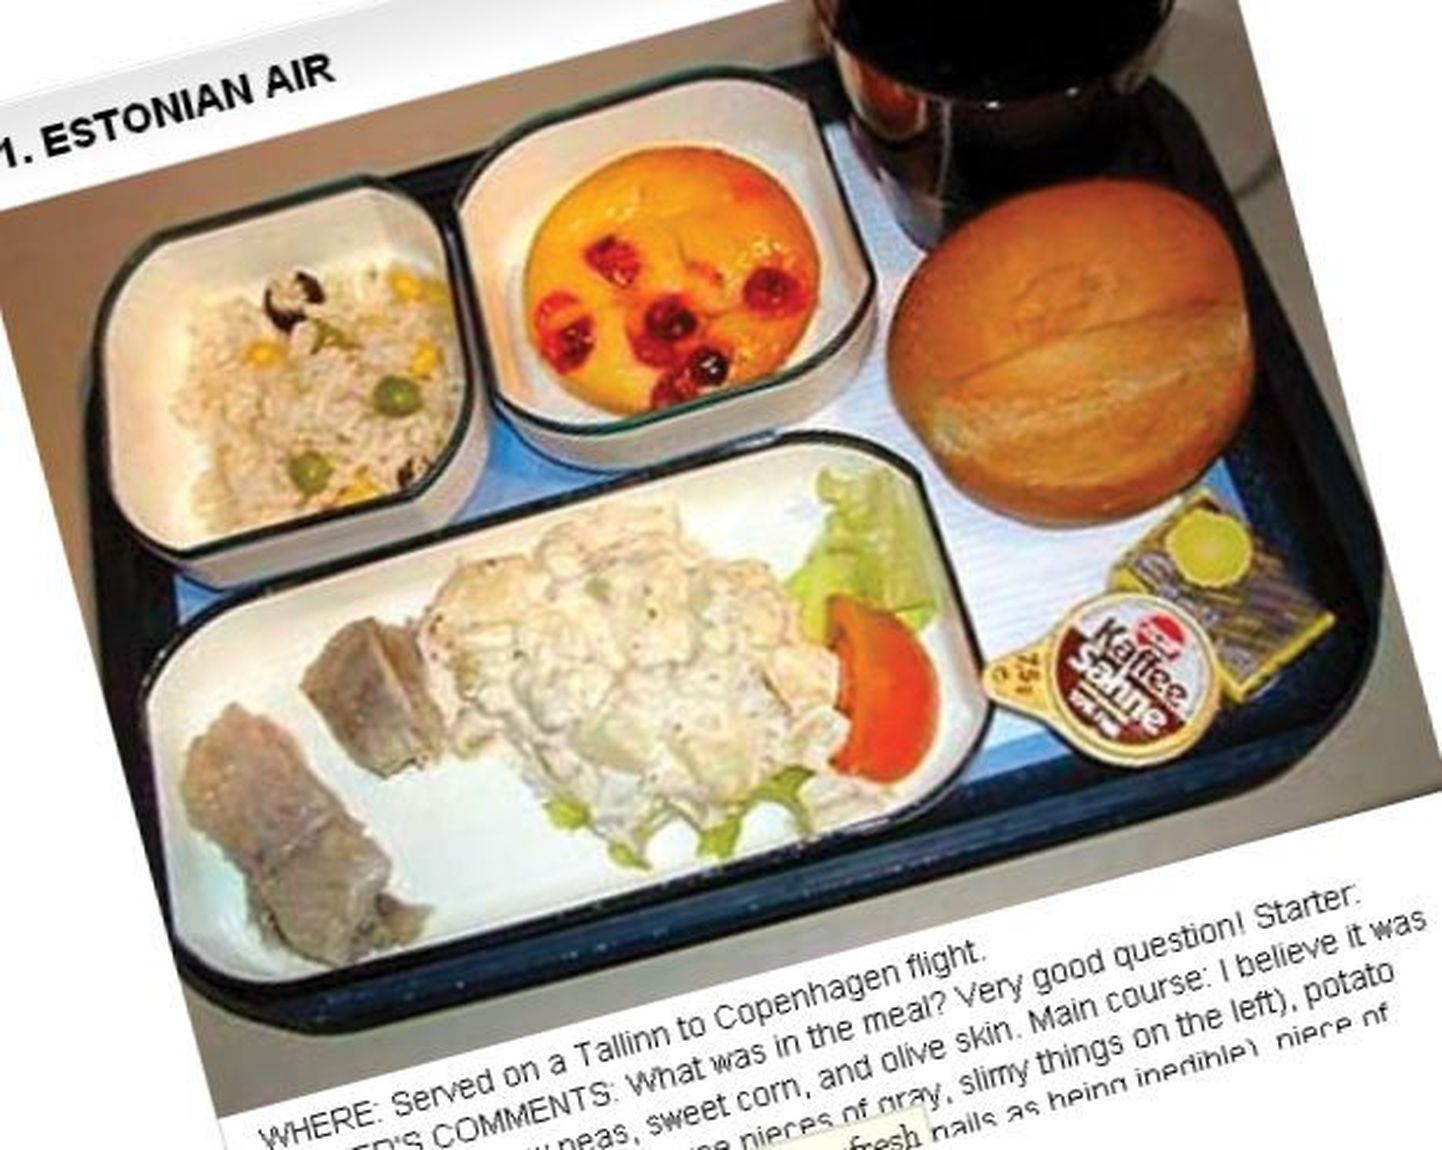 Фотографии злополучного набора питания на борту Estonian Air c портала The Huffington Post.